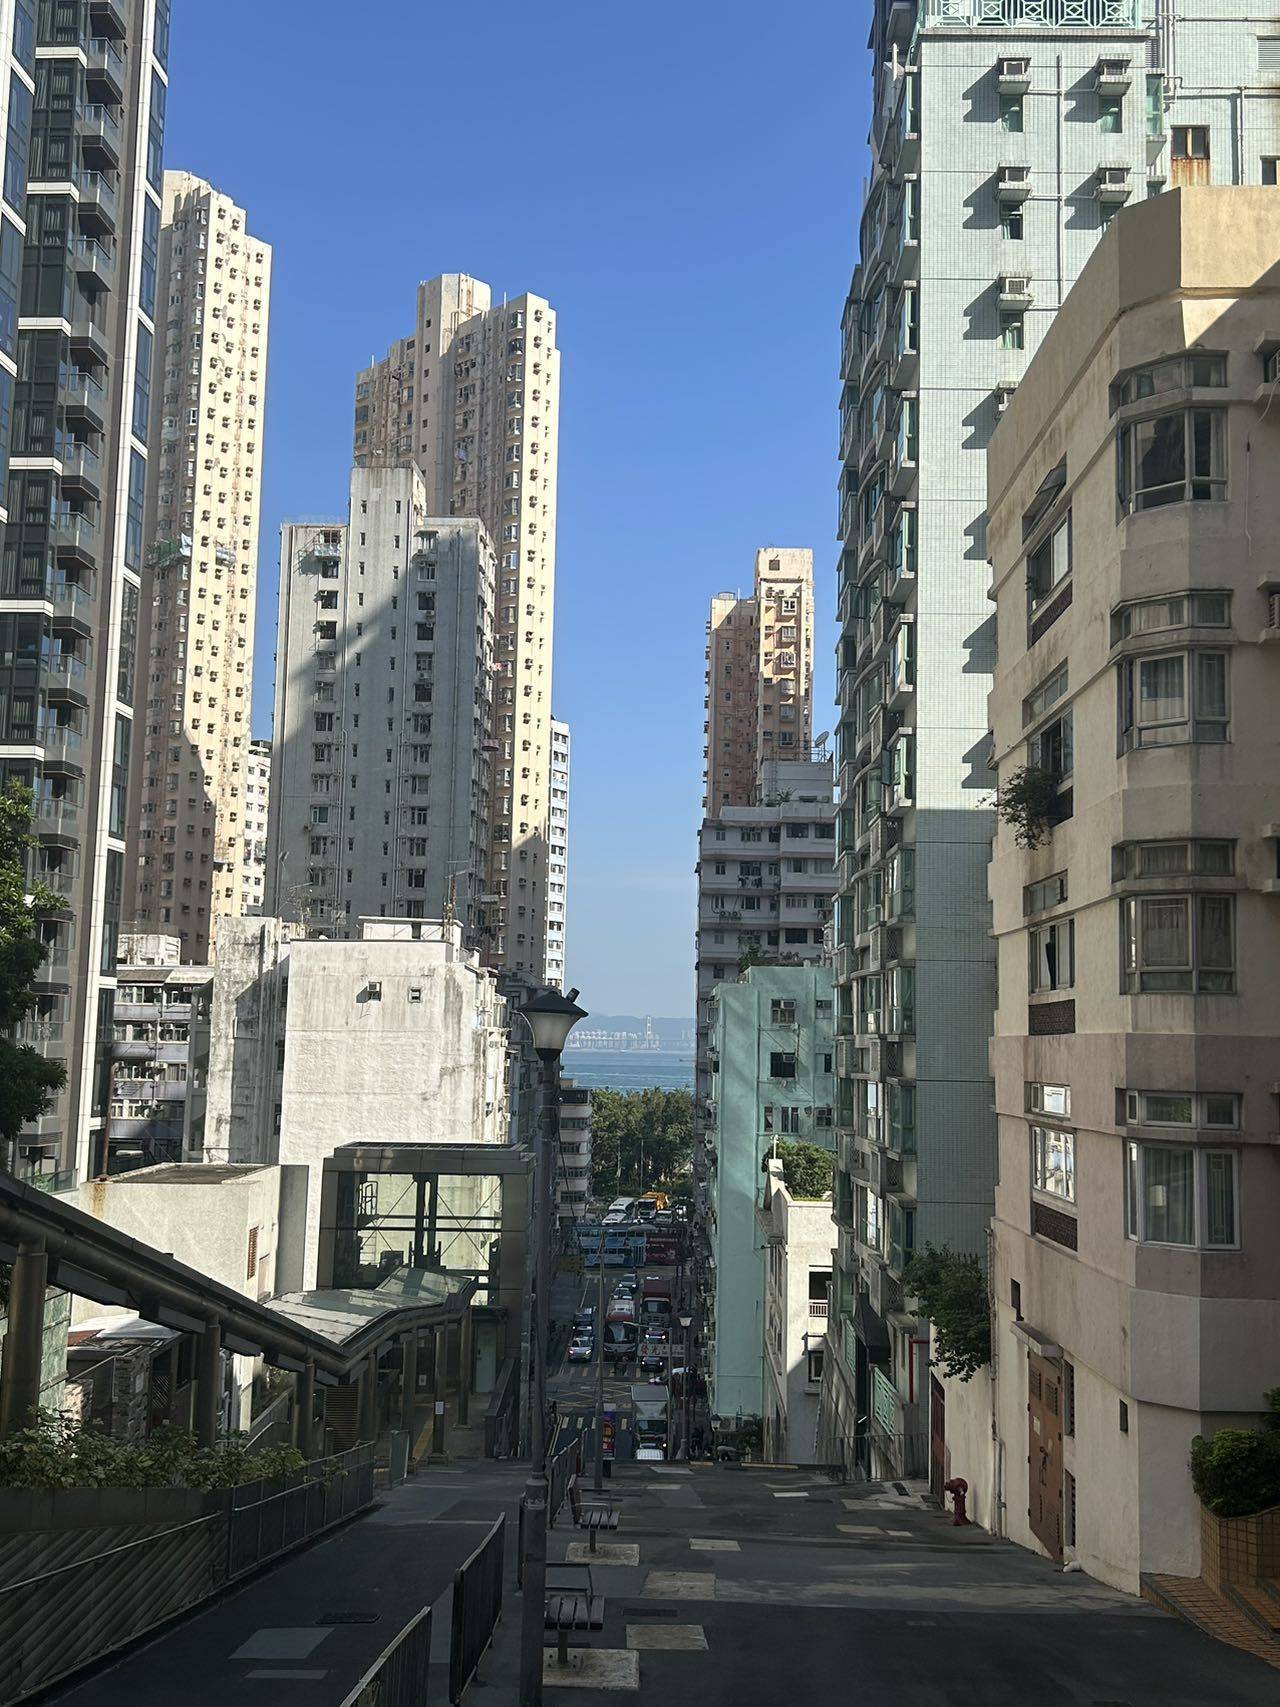 香港-香港島-合租,搬離,找室友,長&短租